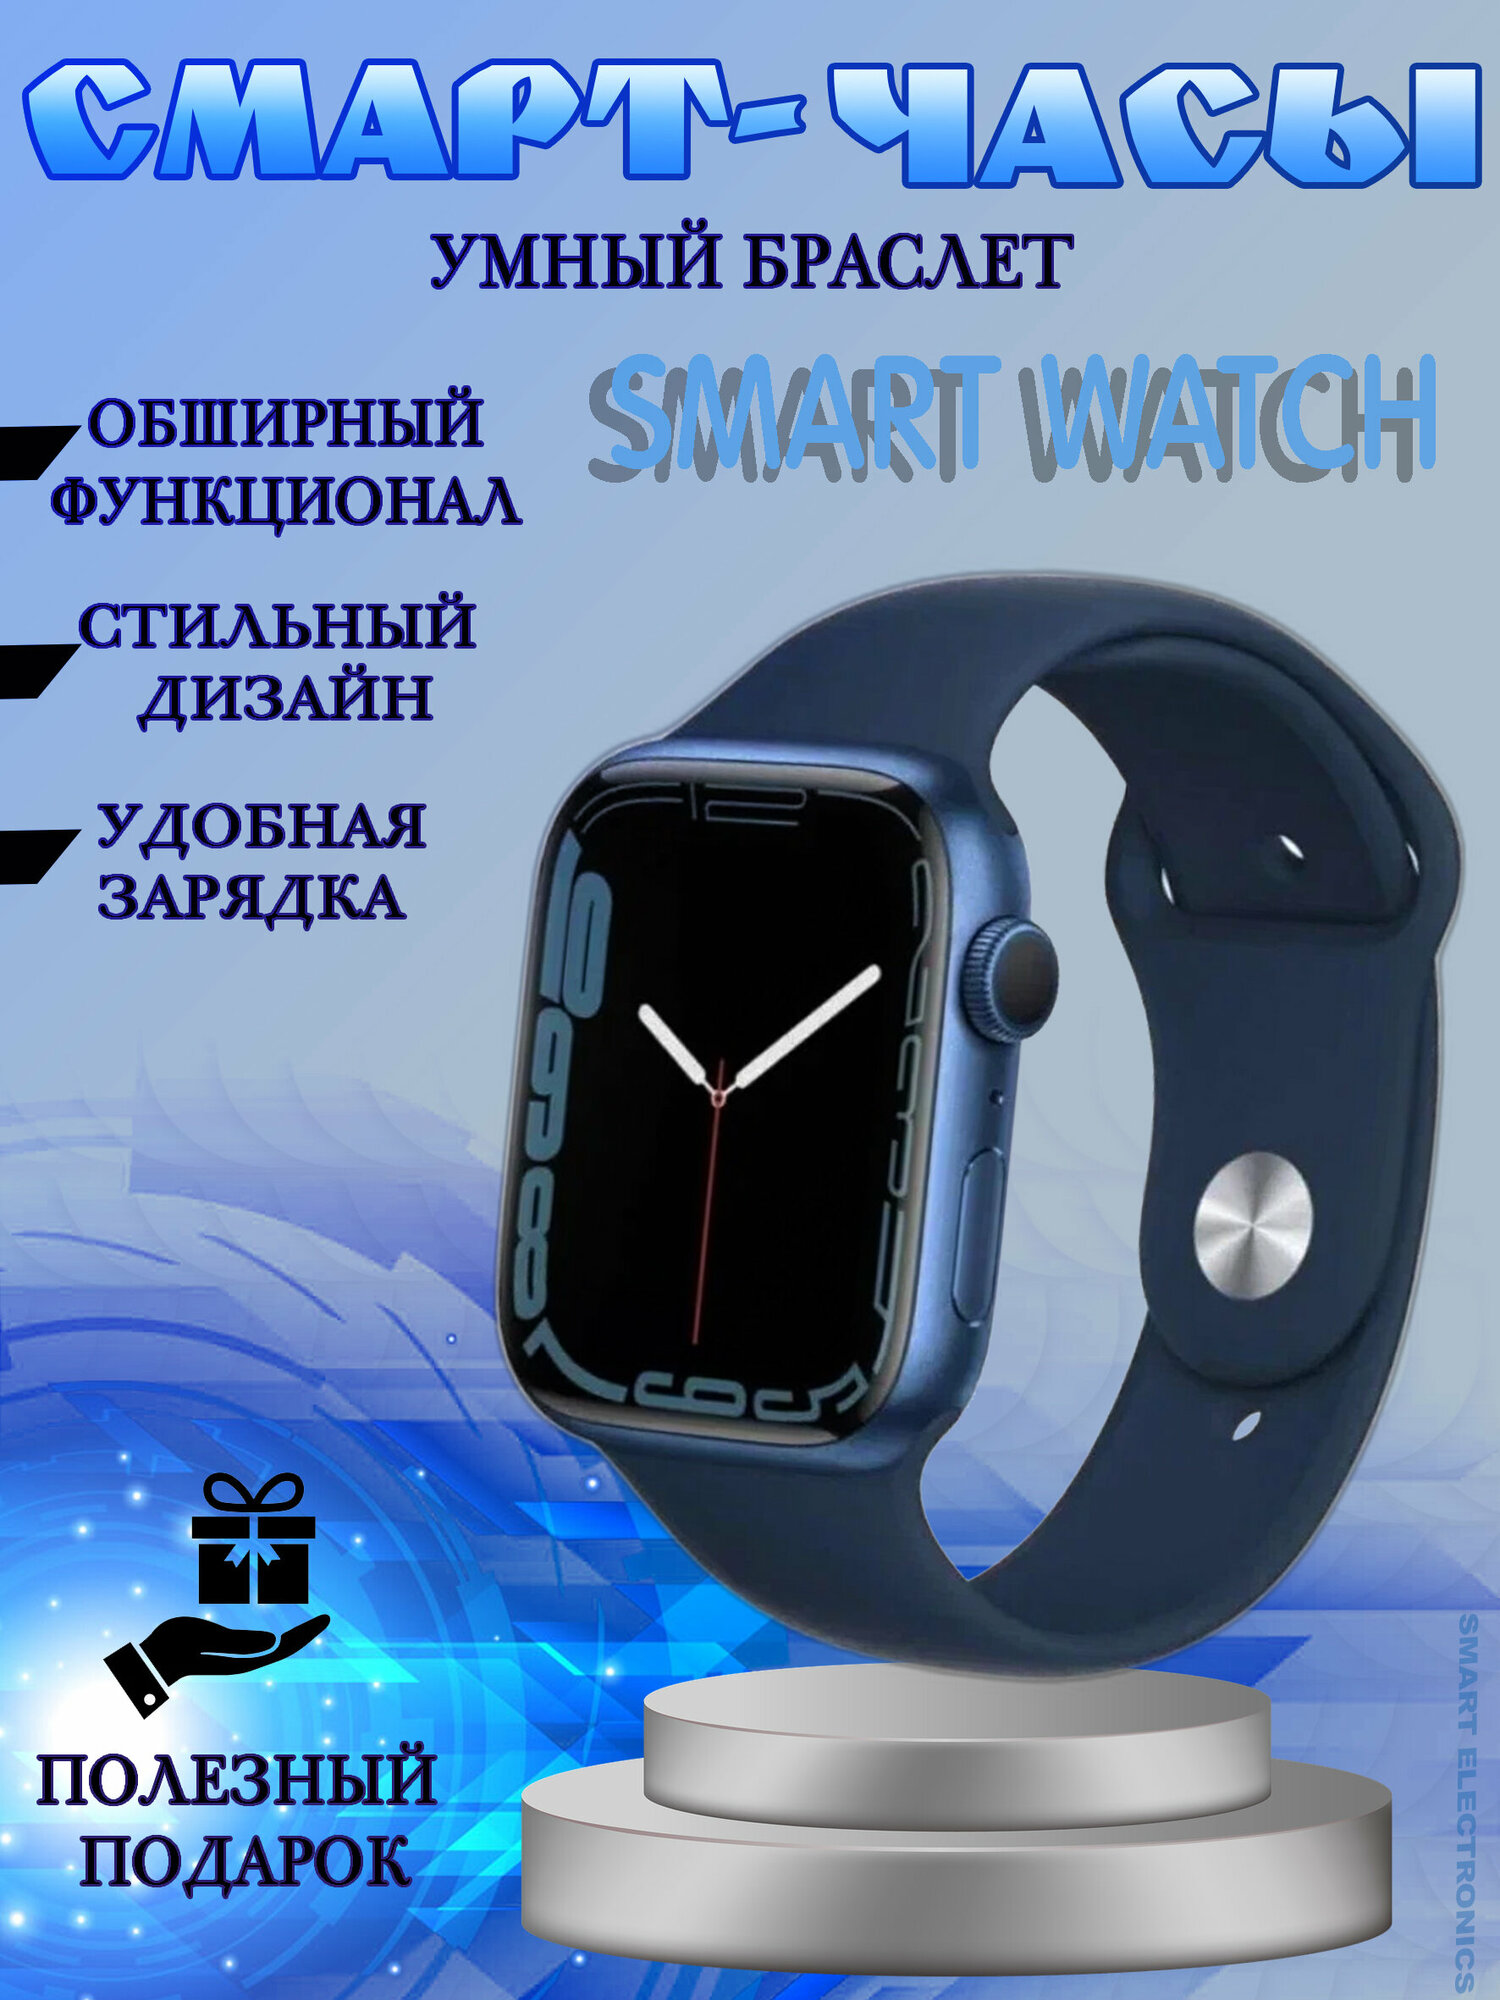 Часы, Смарт часы с сенсорным дисплеем, умный браслет, push-сообщения, полный функционал, синий